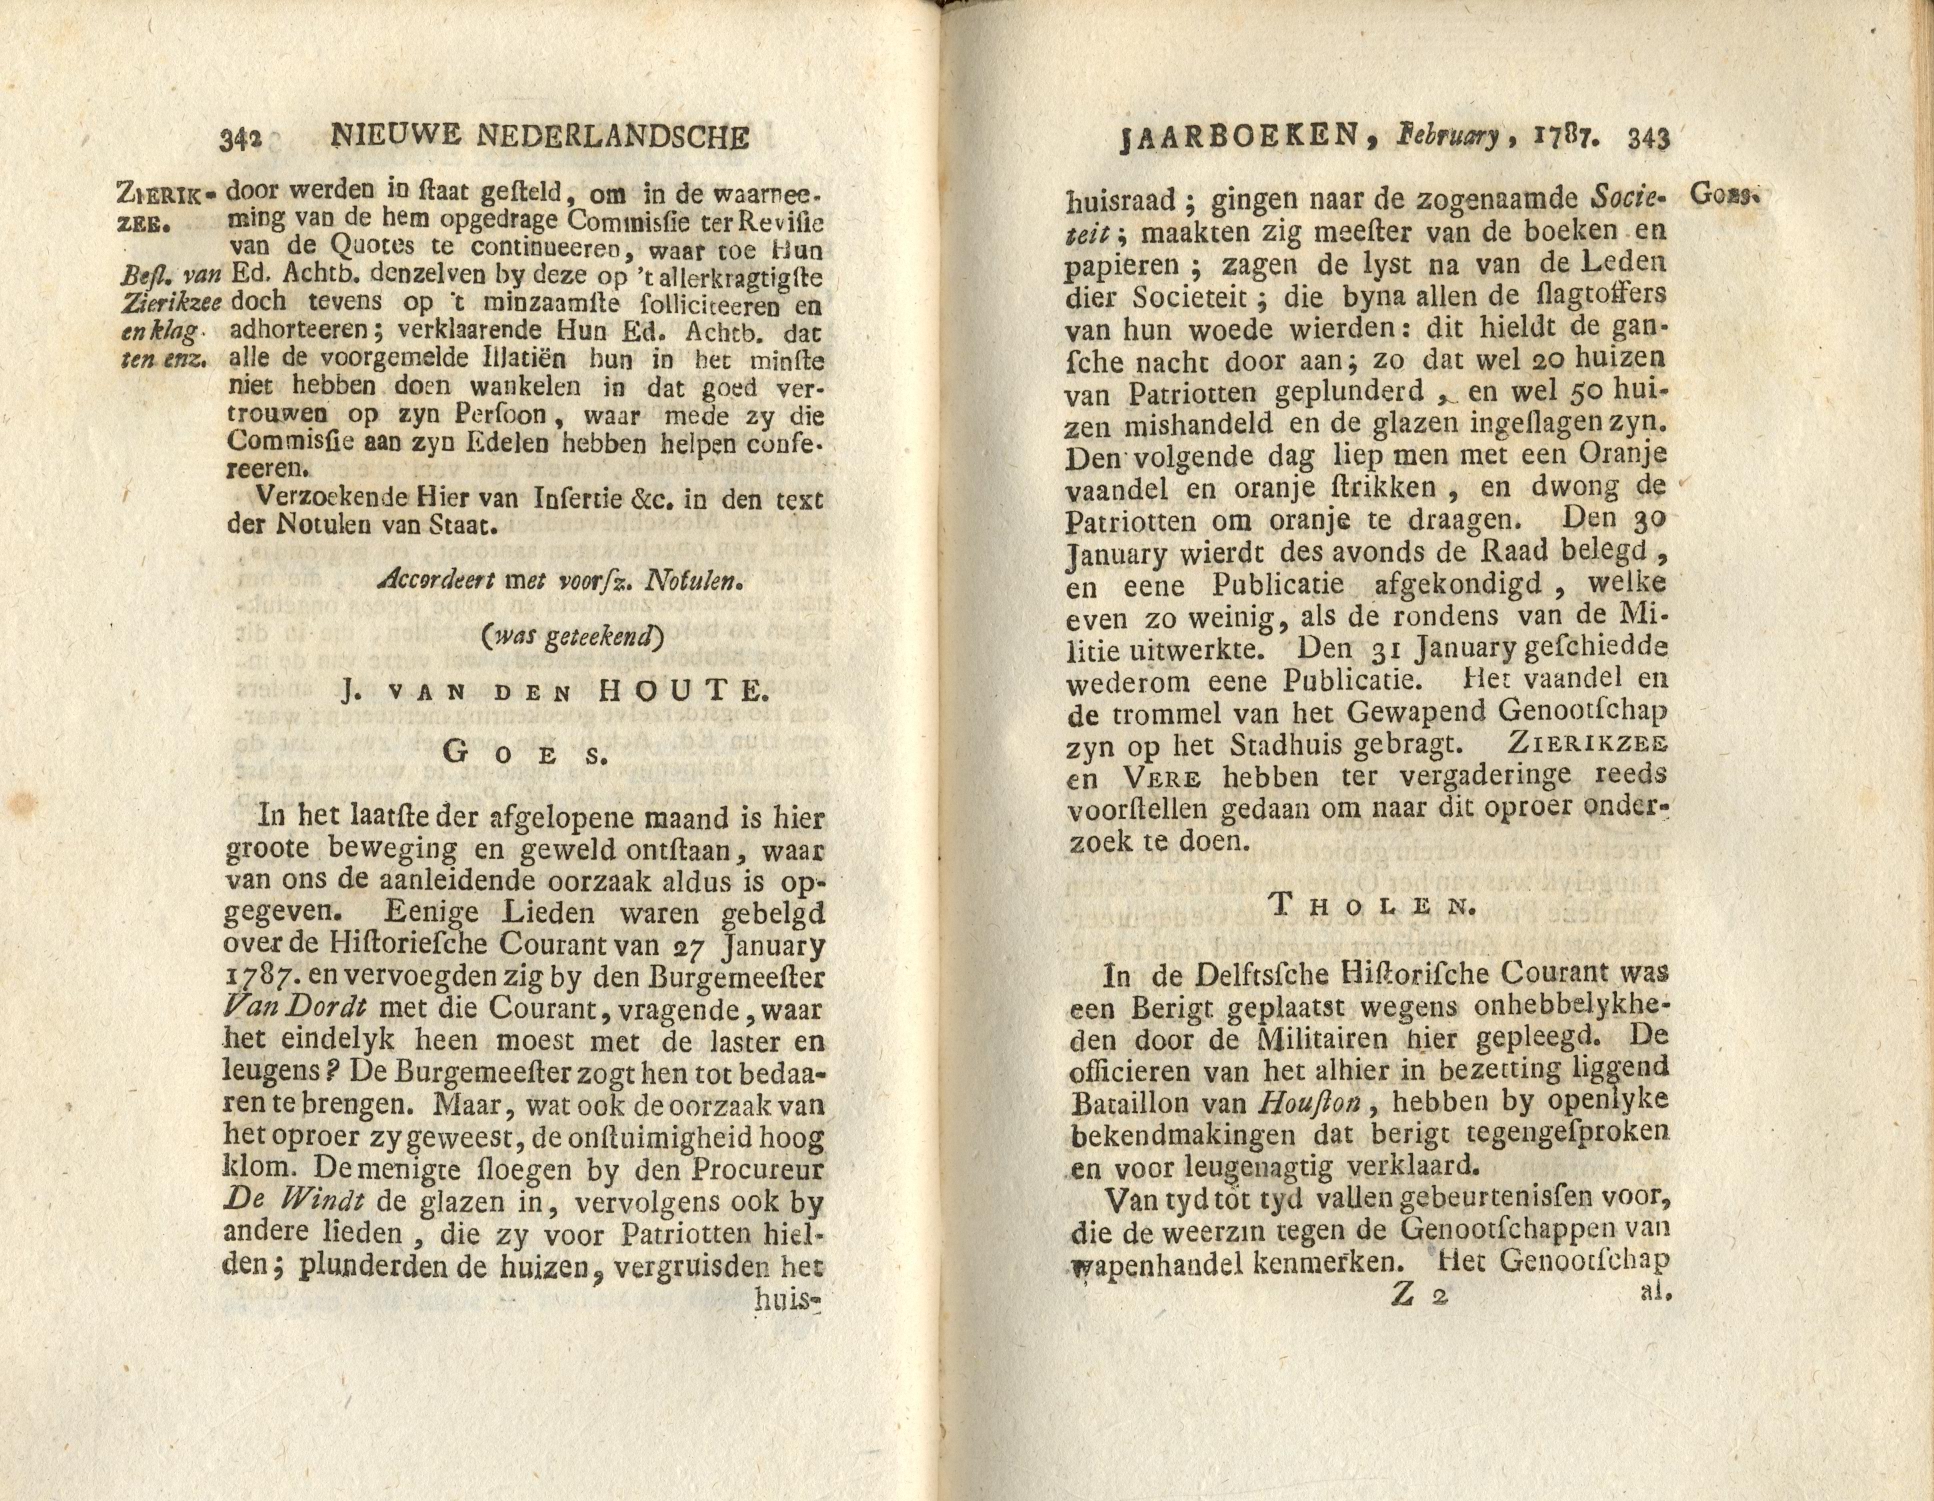 Beschrijving van de rellen te Goes, 1787.